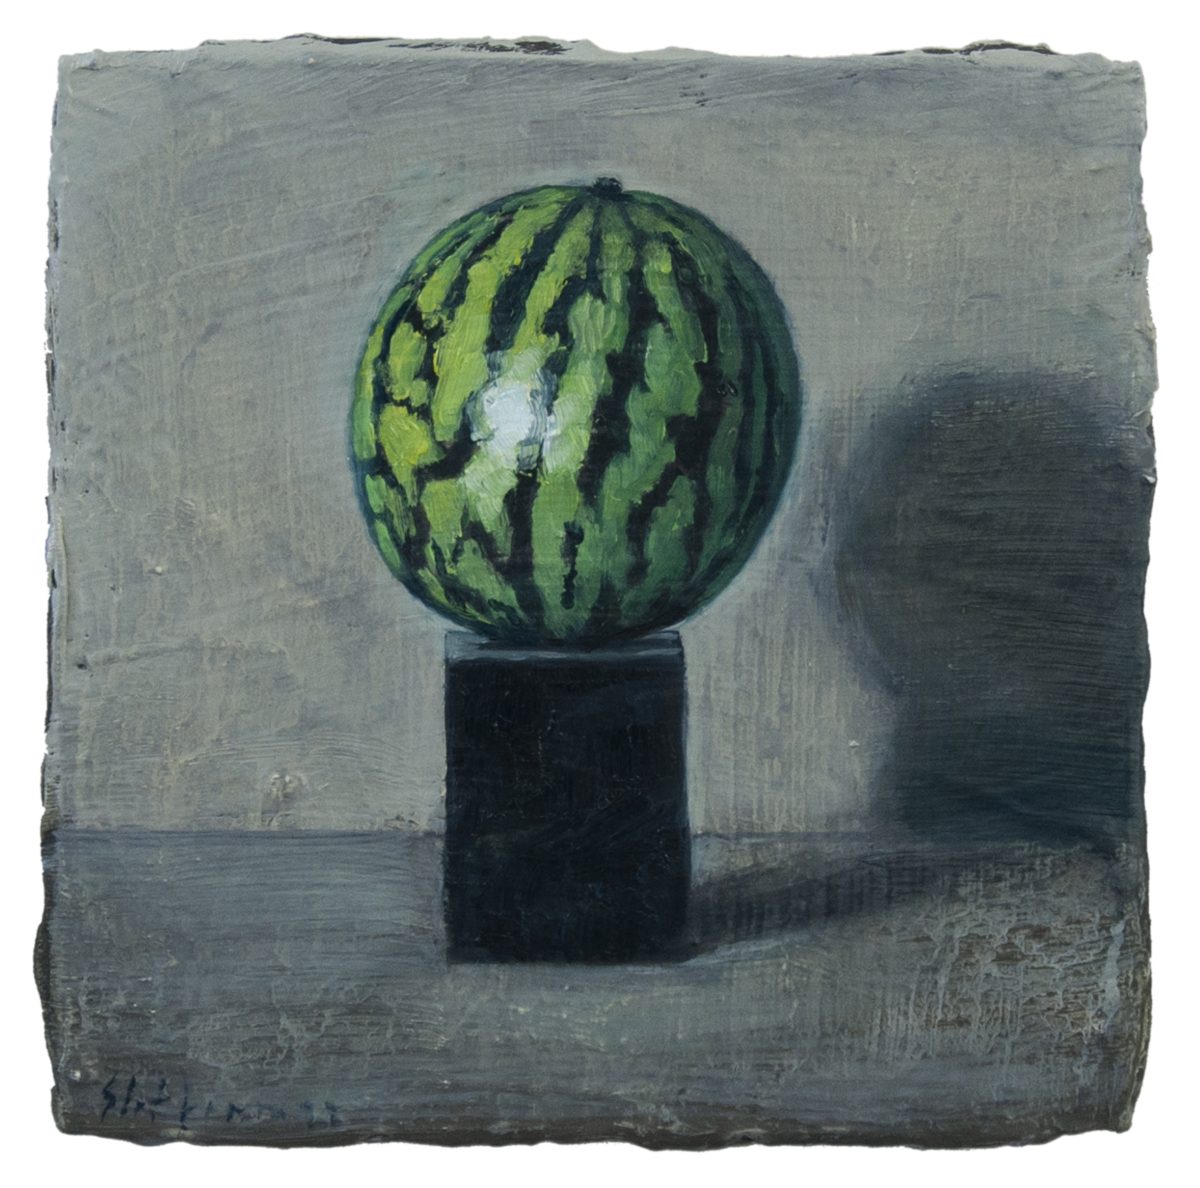 Meloen op de sokkel van Charlotte Pallandts zelfportret I